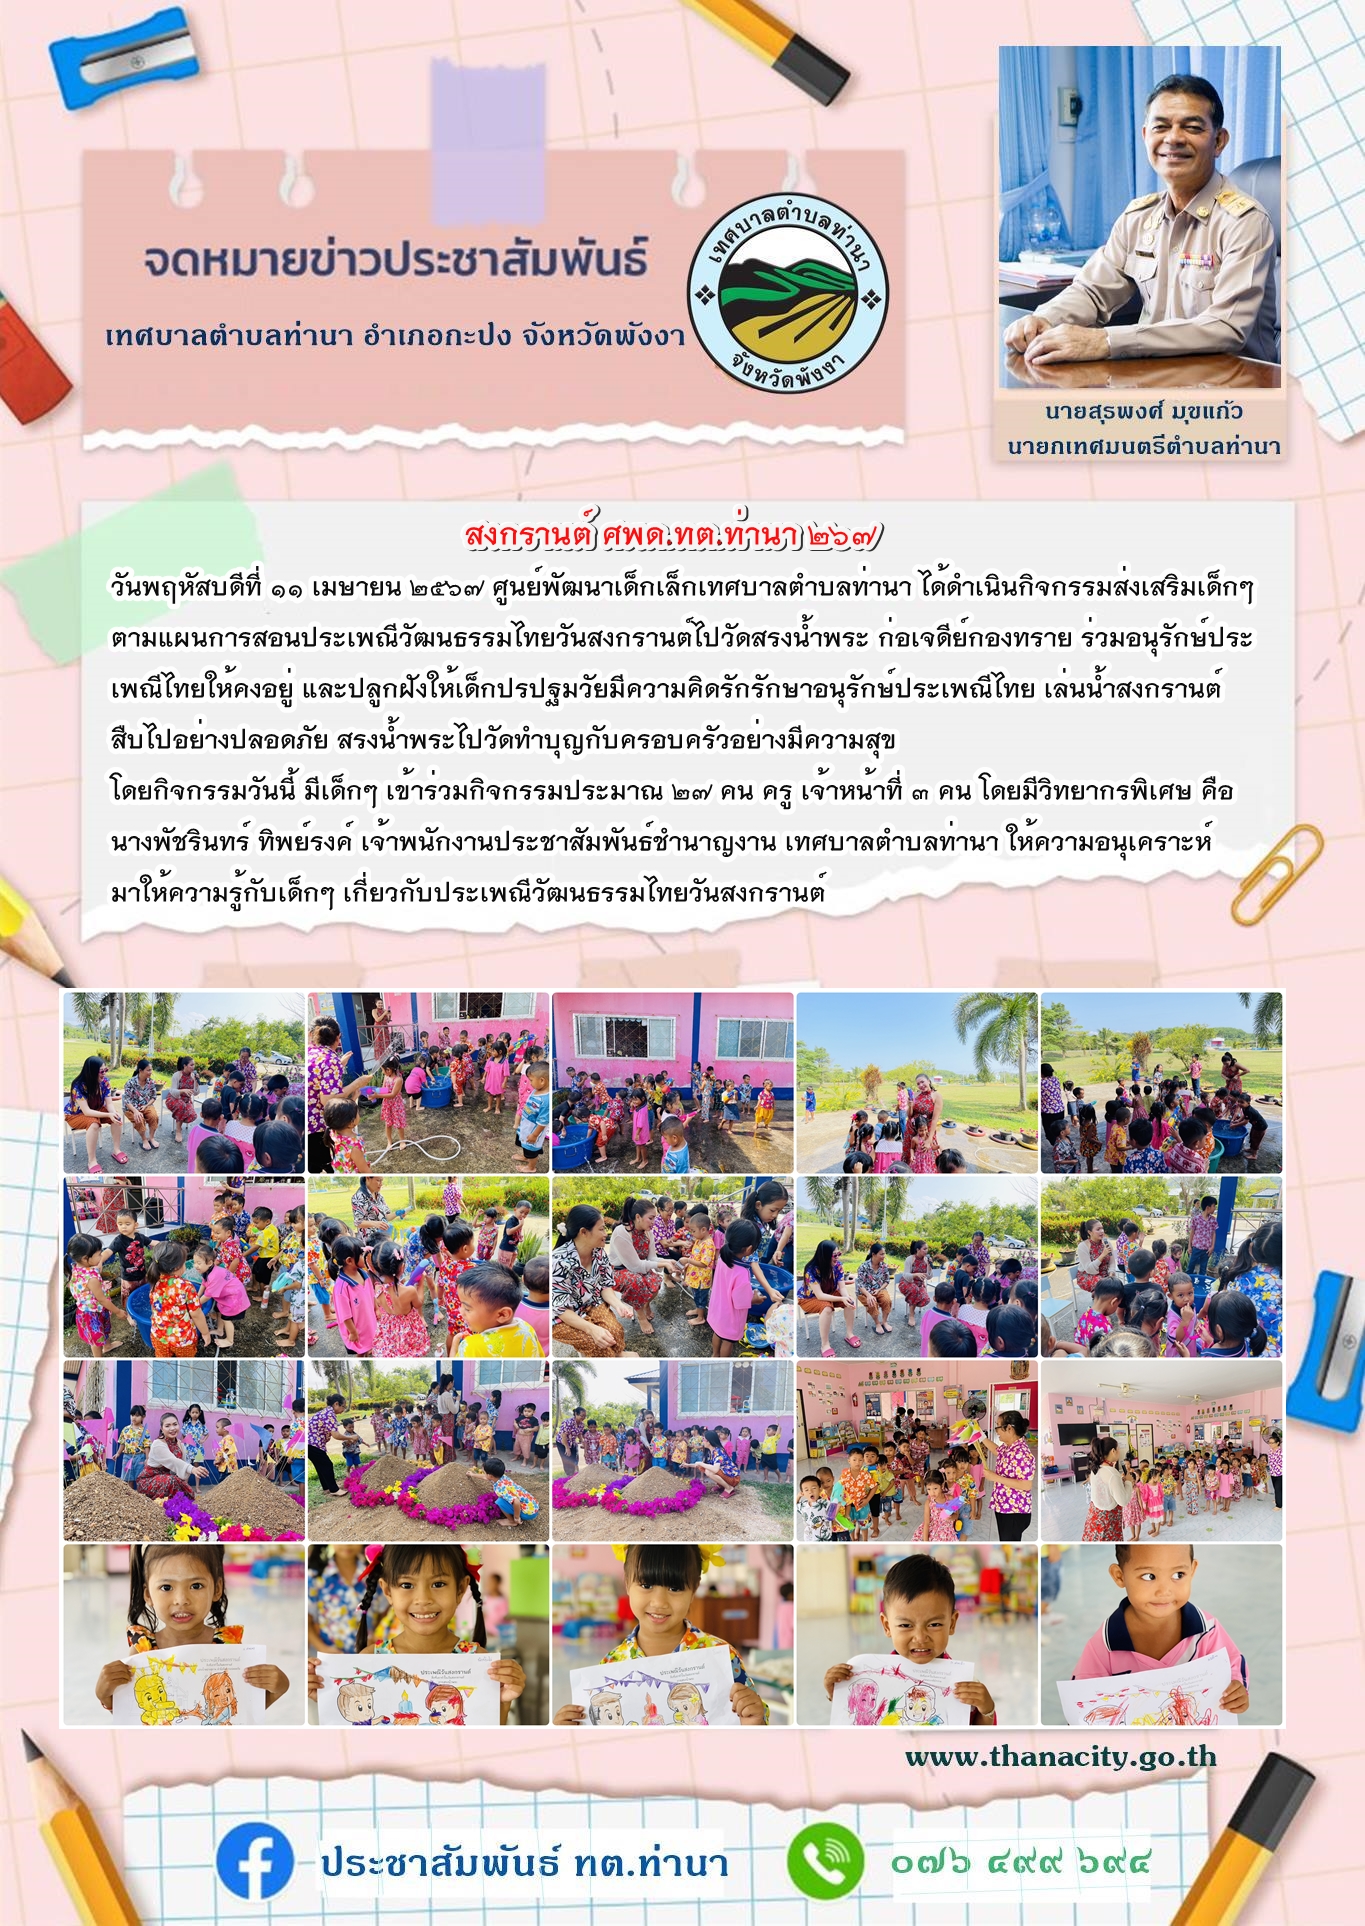 ศูนย์พัฒนาเด็กเล็กเทศบาลตำบลท่านา ได้ดำเนินกิจกรรมส่งเสริมเด็กๆ ตามแผนการสอนประเพณีวัฒนธรรมไทยวันสงกรานต์ไปวัดสรงน้ำพระ ก่อเจดีย์กองทราย ร่วมอนุรักษ์ประเพณีไทย